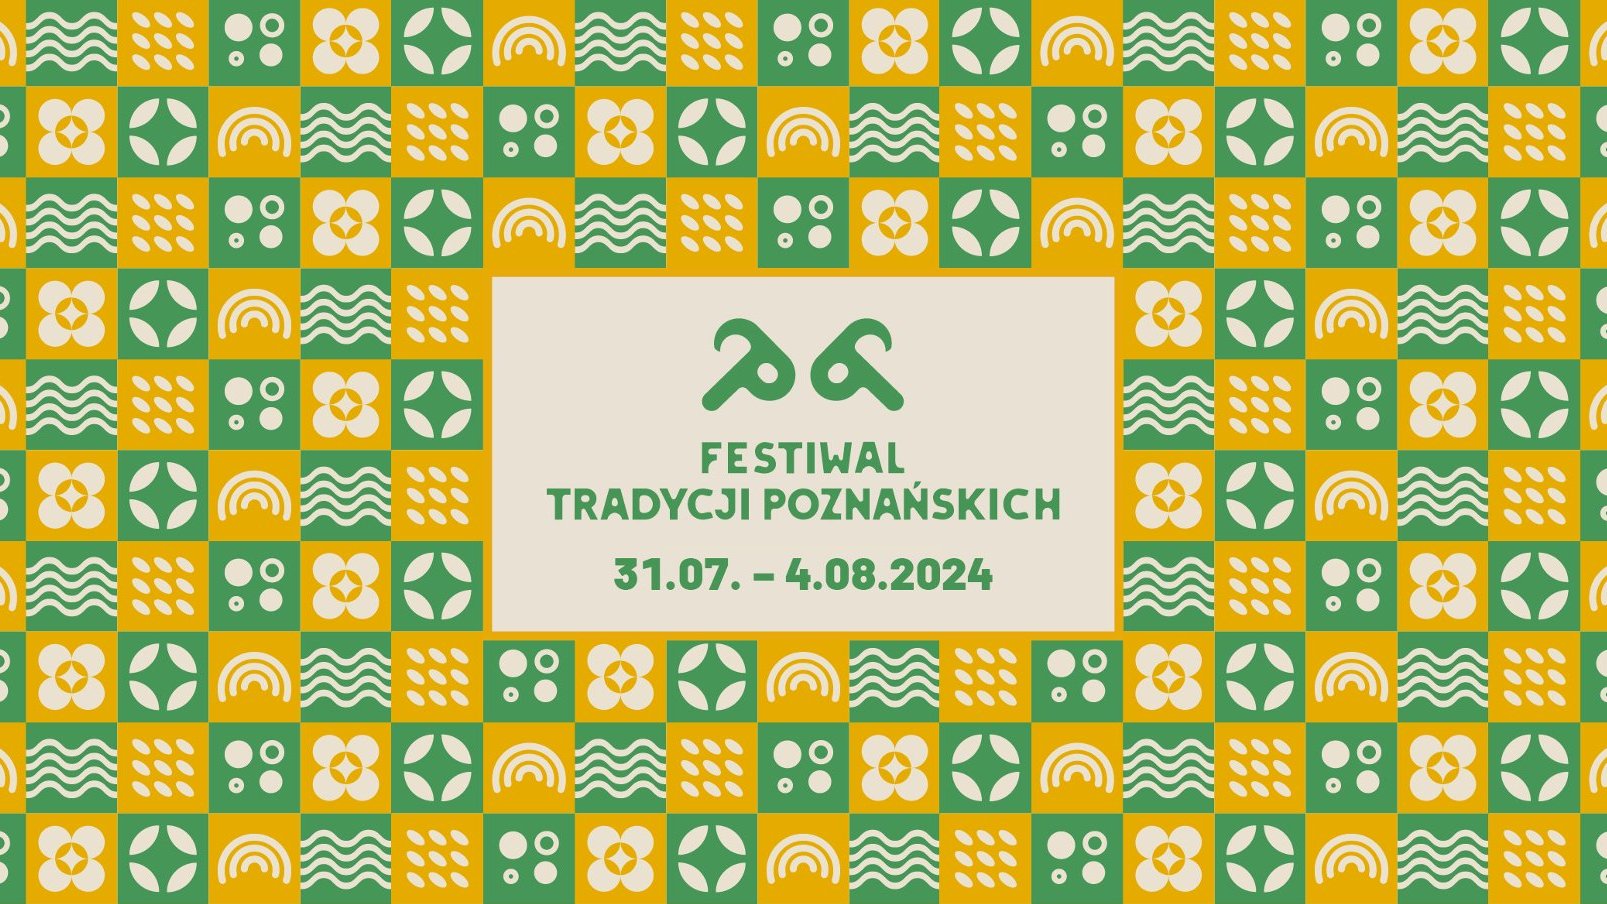 Grafika z napisem: Festiwal tradycji poznańskich